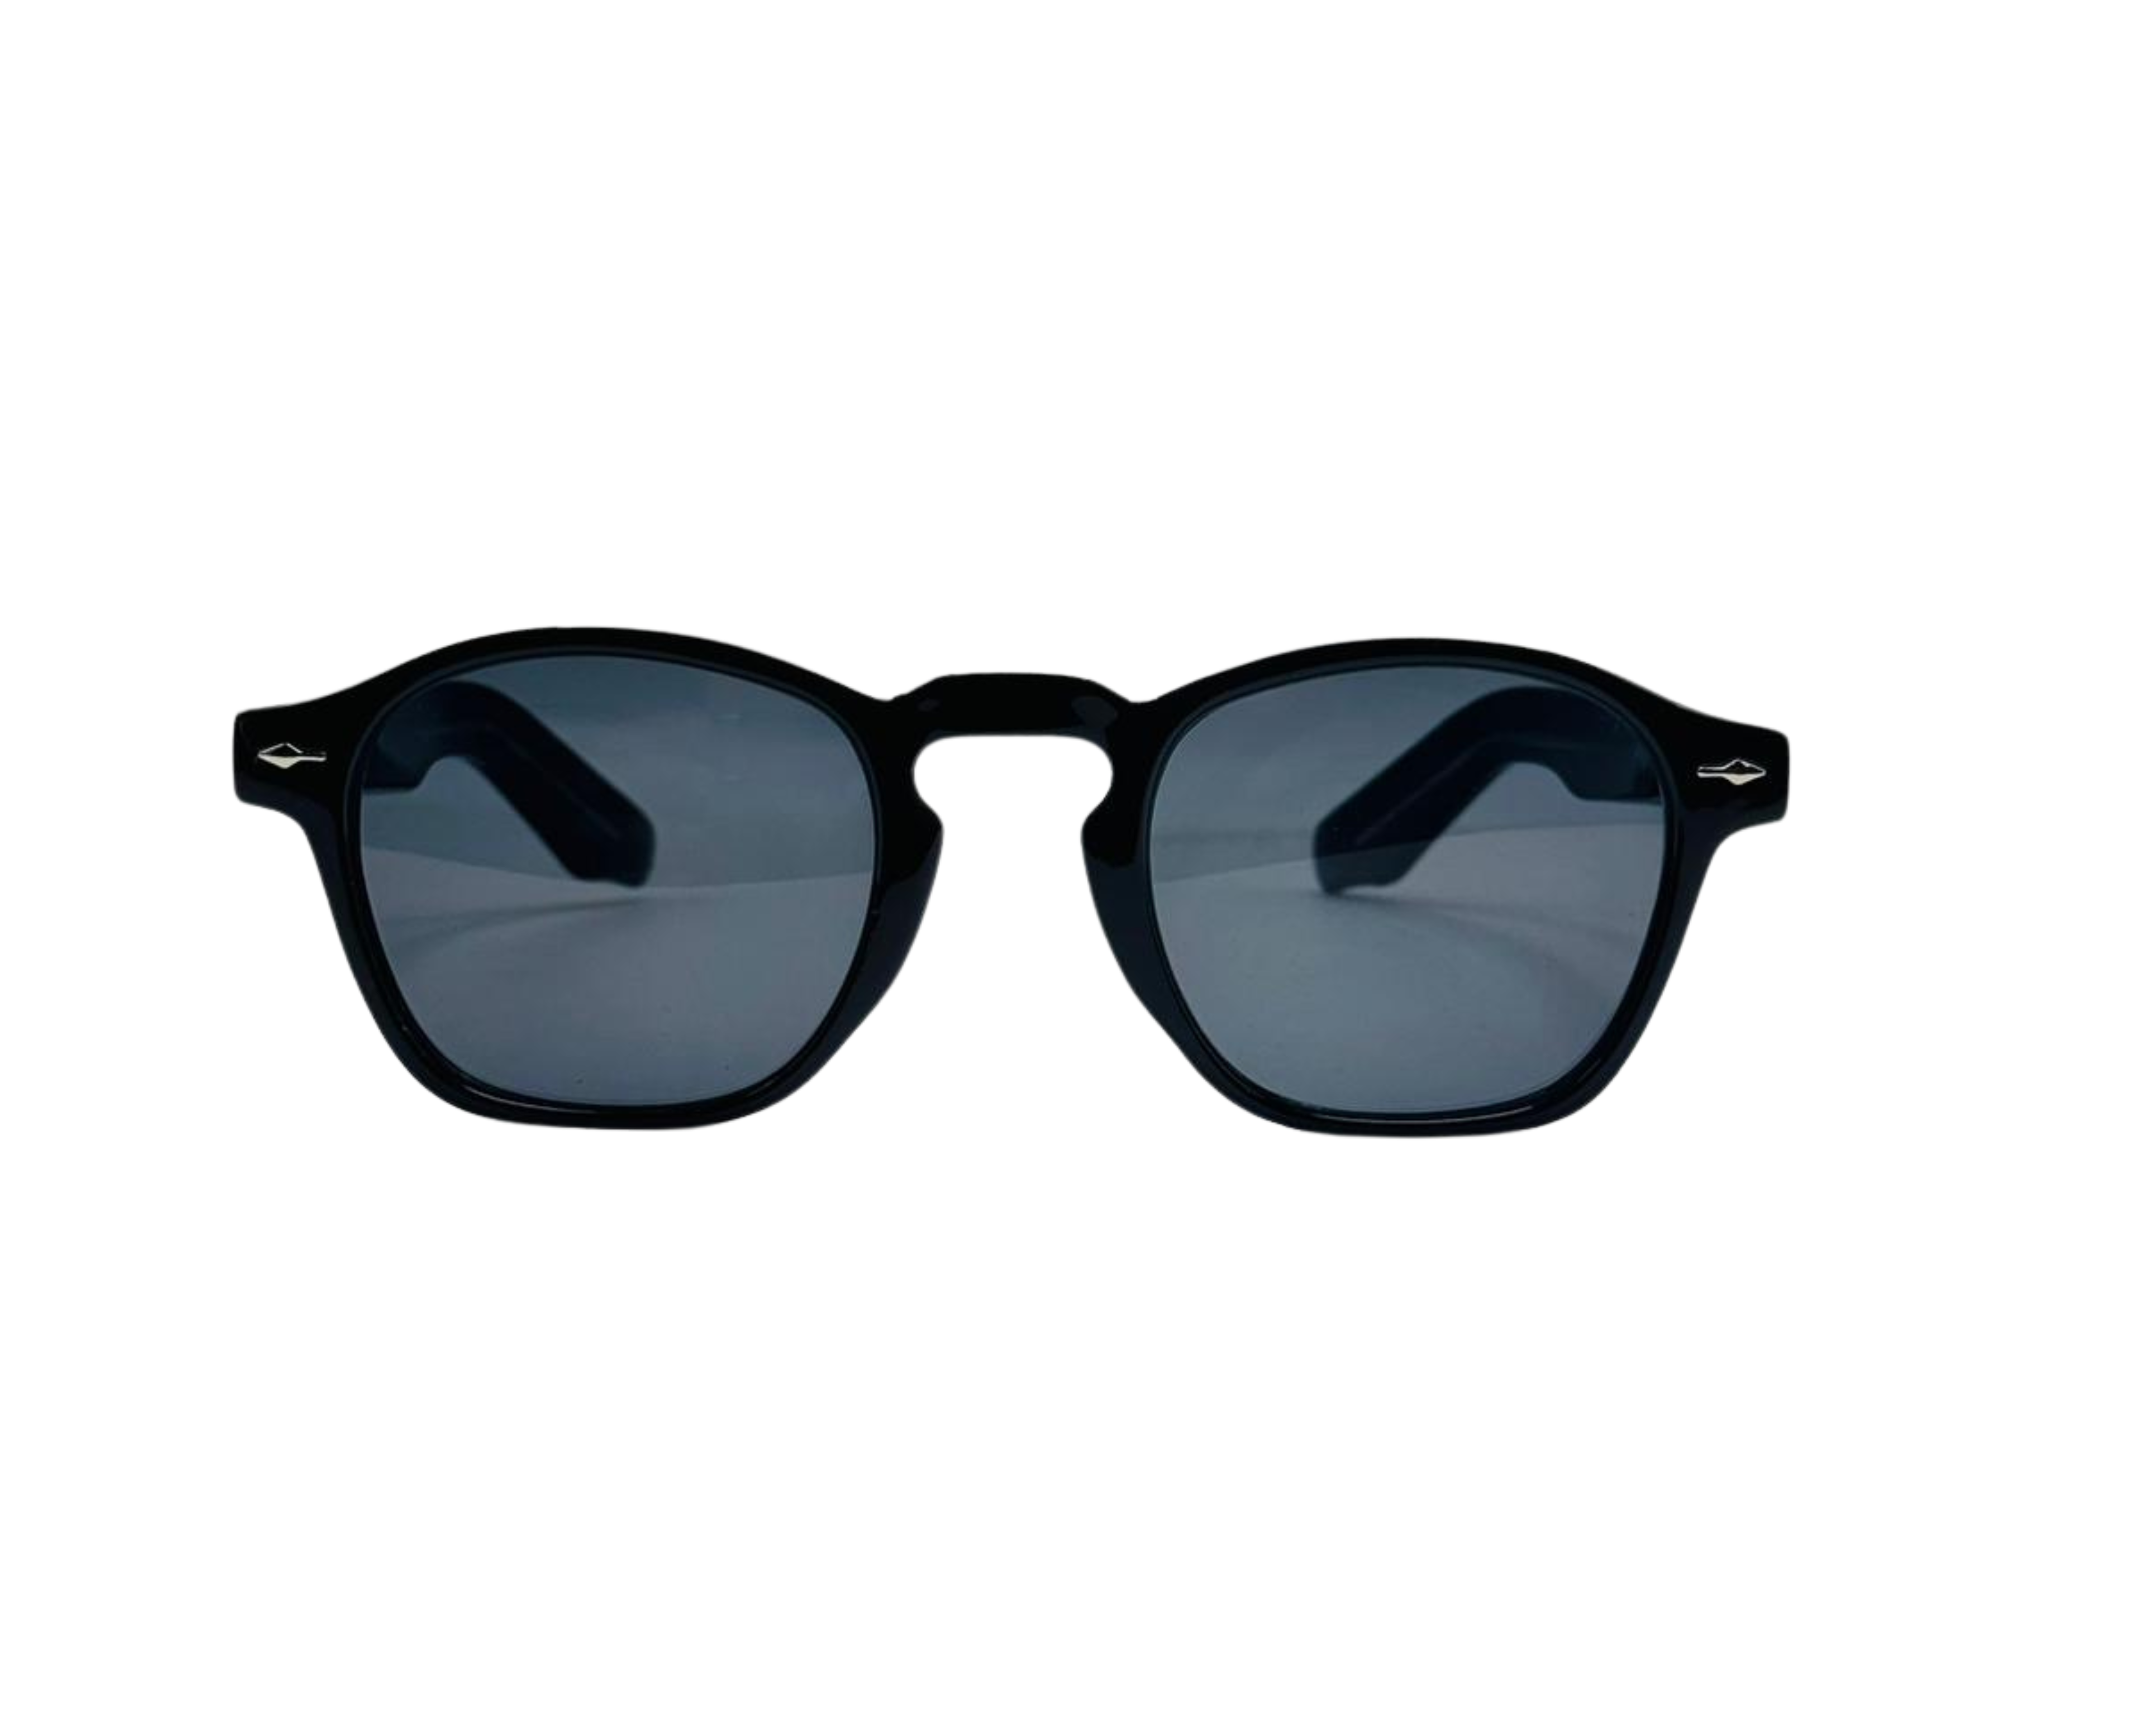 NS Luxury - 9823 - Black - Sunglasses